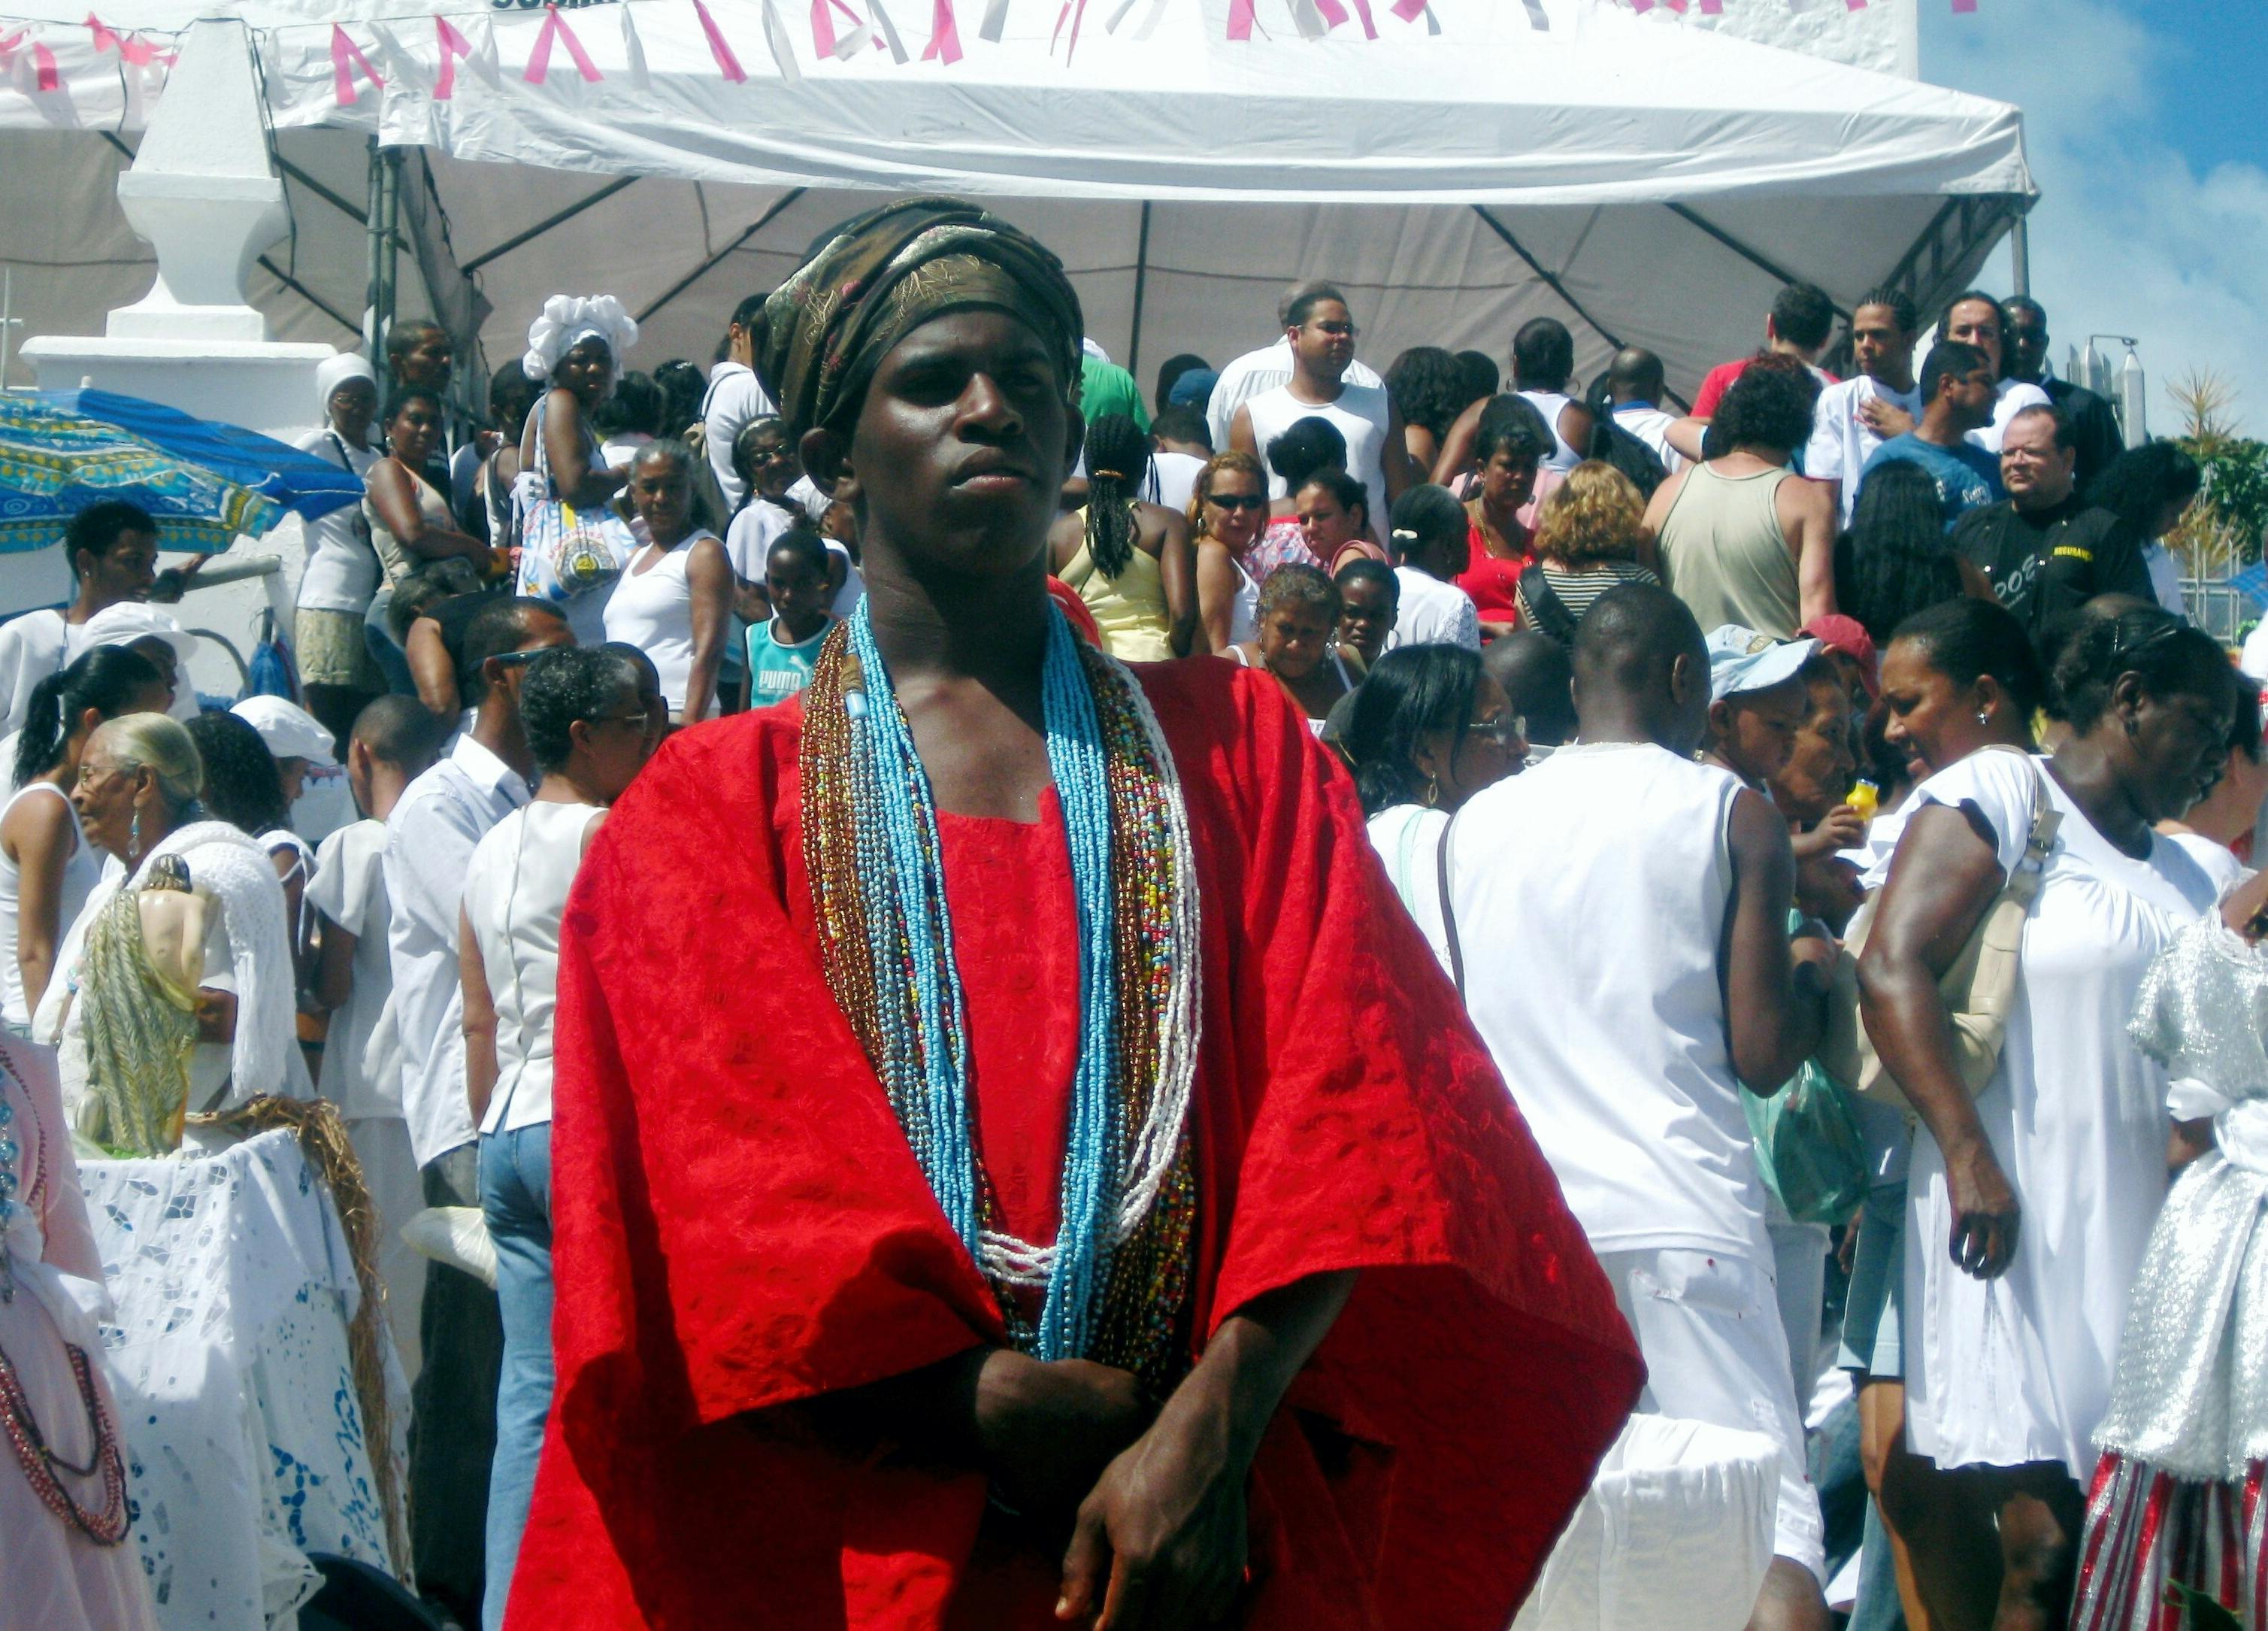 pai de santos em cerimônia de candomblé em Salvador Bahia